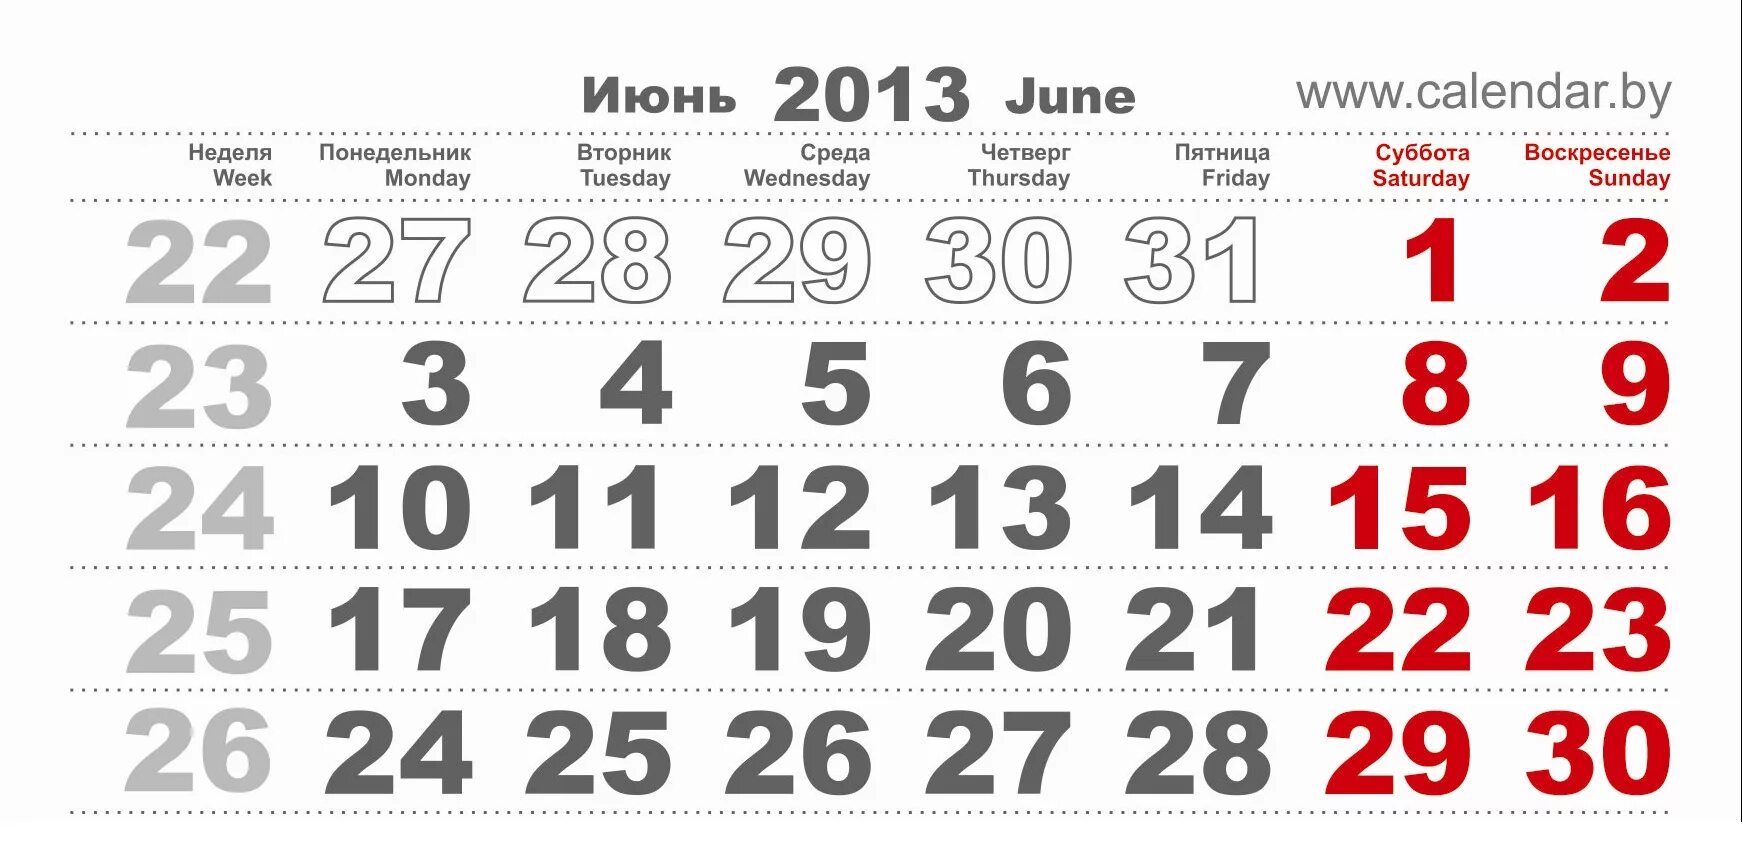 Календарь на март 2013 года. Июль 2013 года календарь. Март 2016 года. Октябрь 2016 года календарь. Календарь март 2016